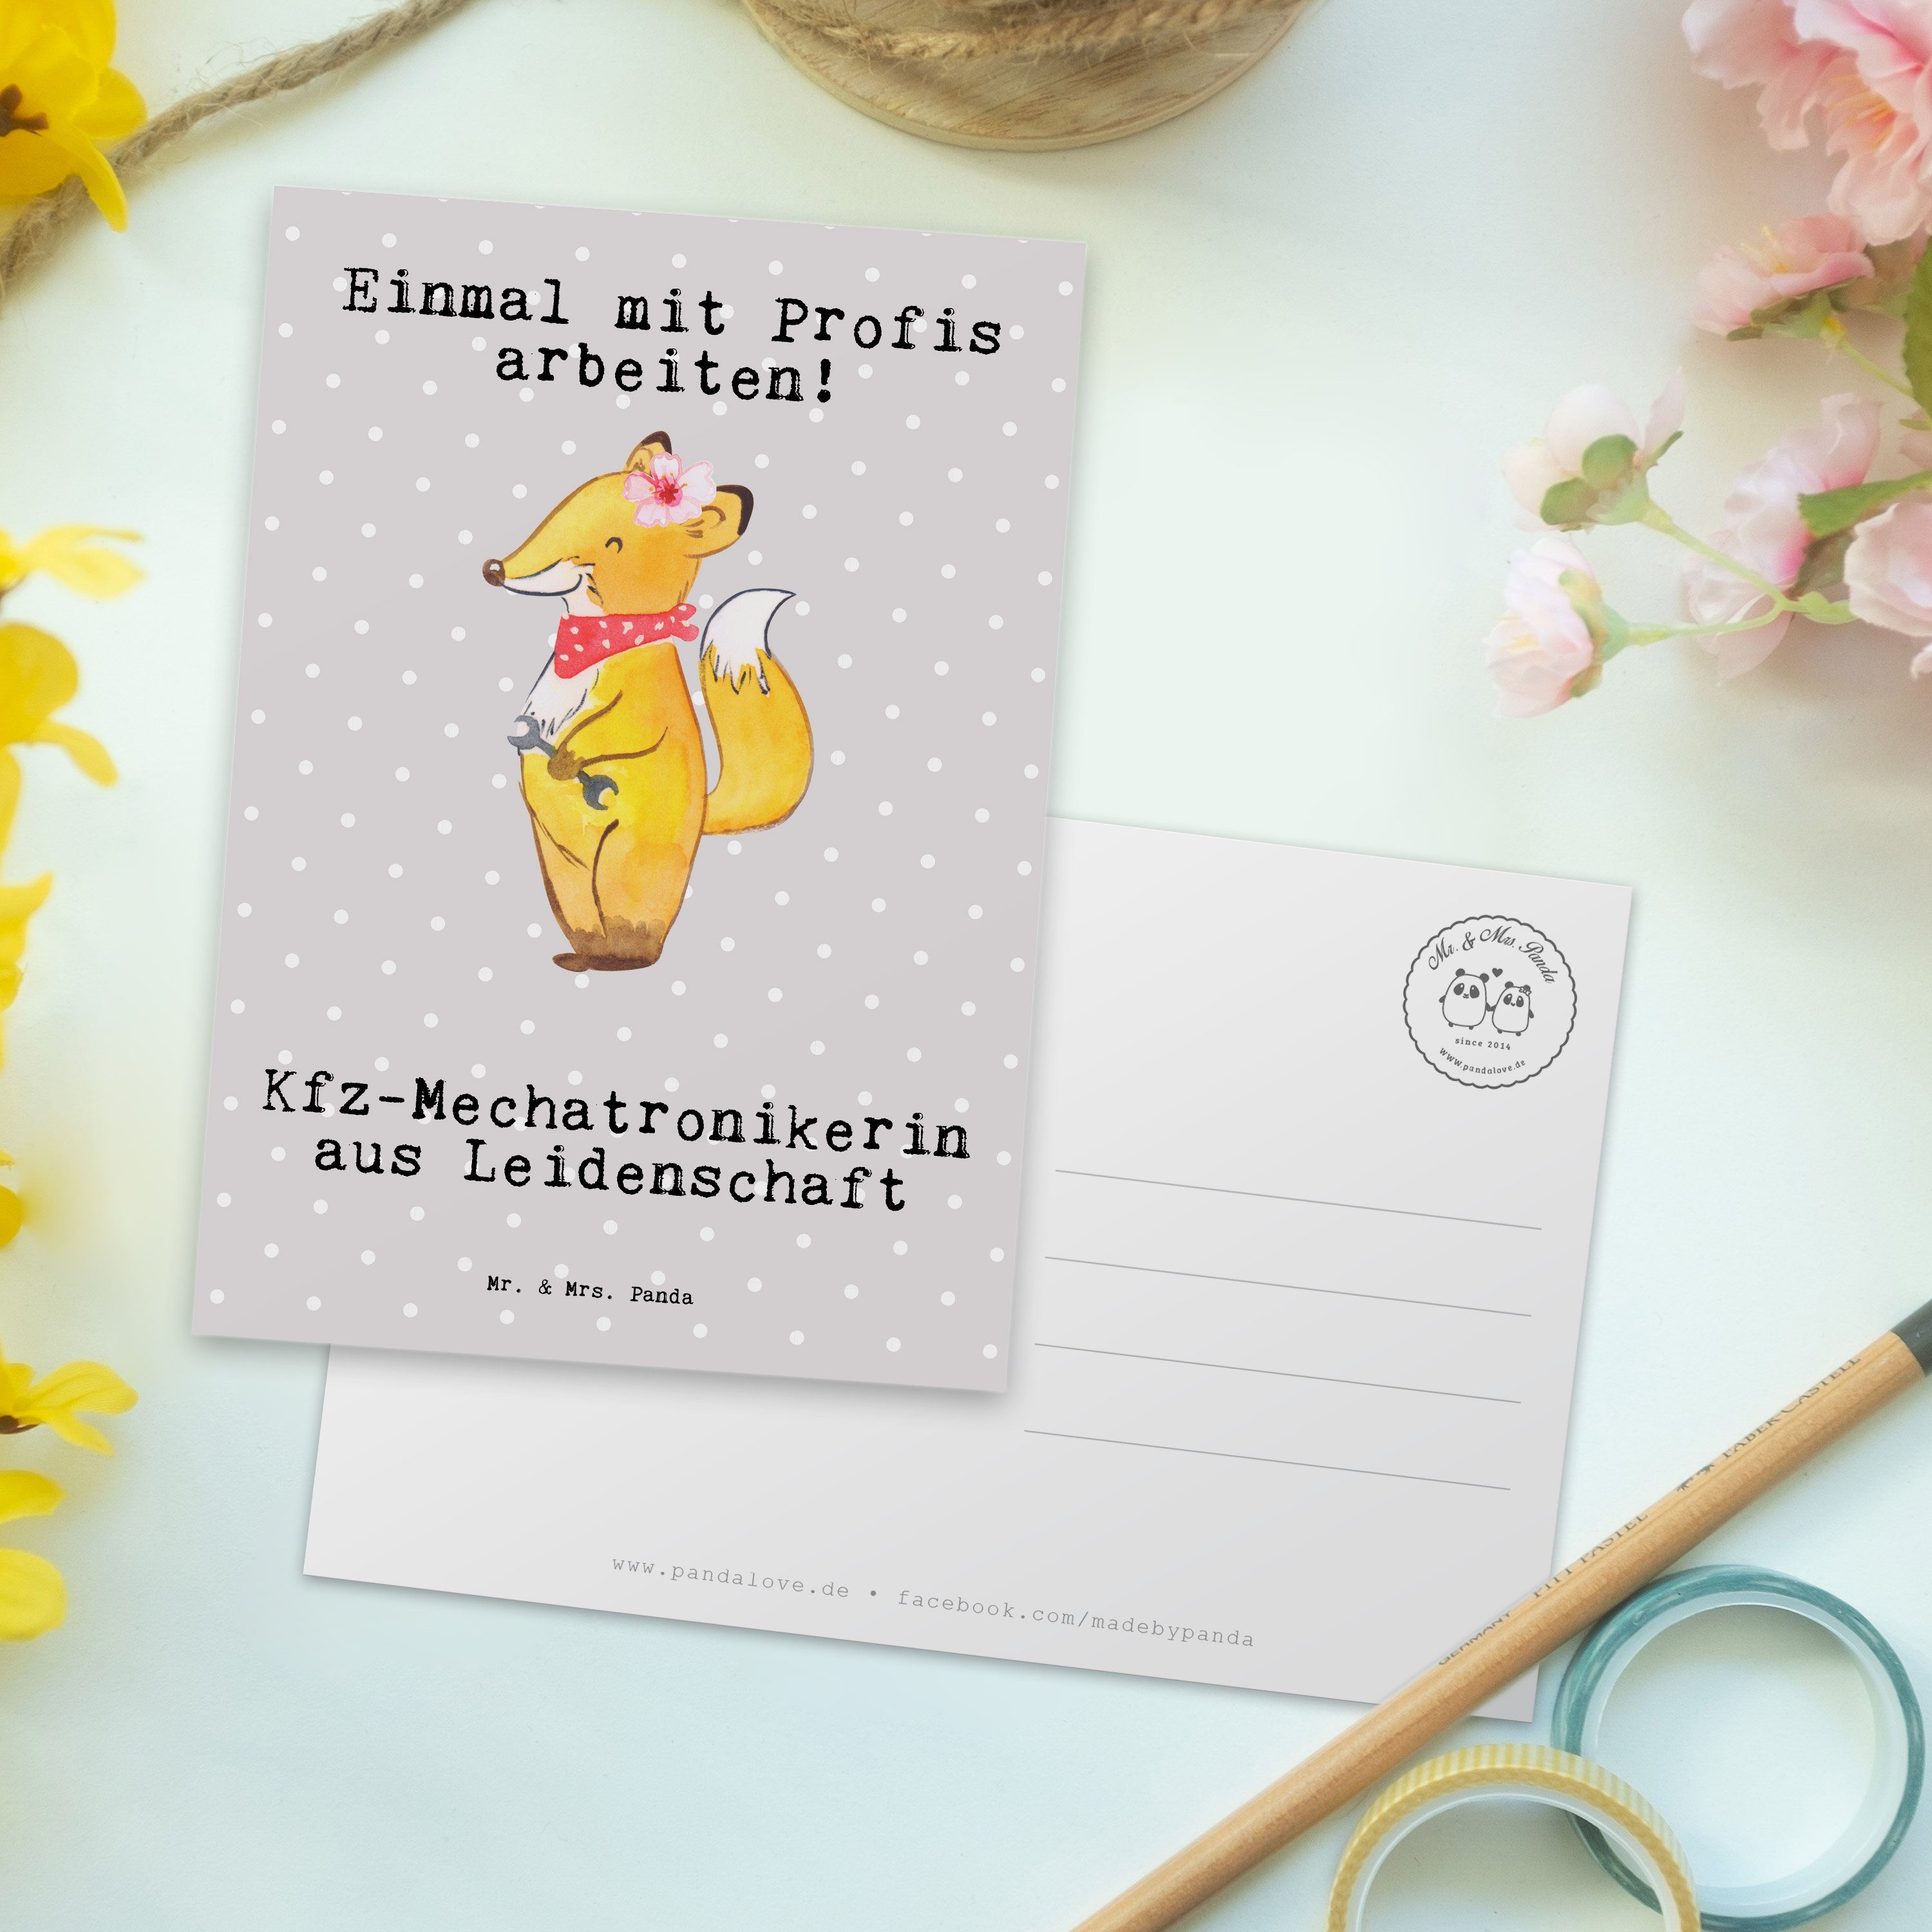 Mr. aus - Pastell Geschenk, Grau Gebur Mrs. Leidenschaft - Postkarte Kfz-Mechatronikerin & Panda